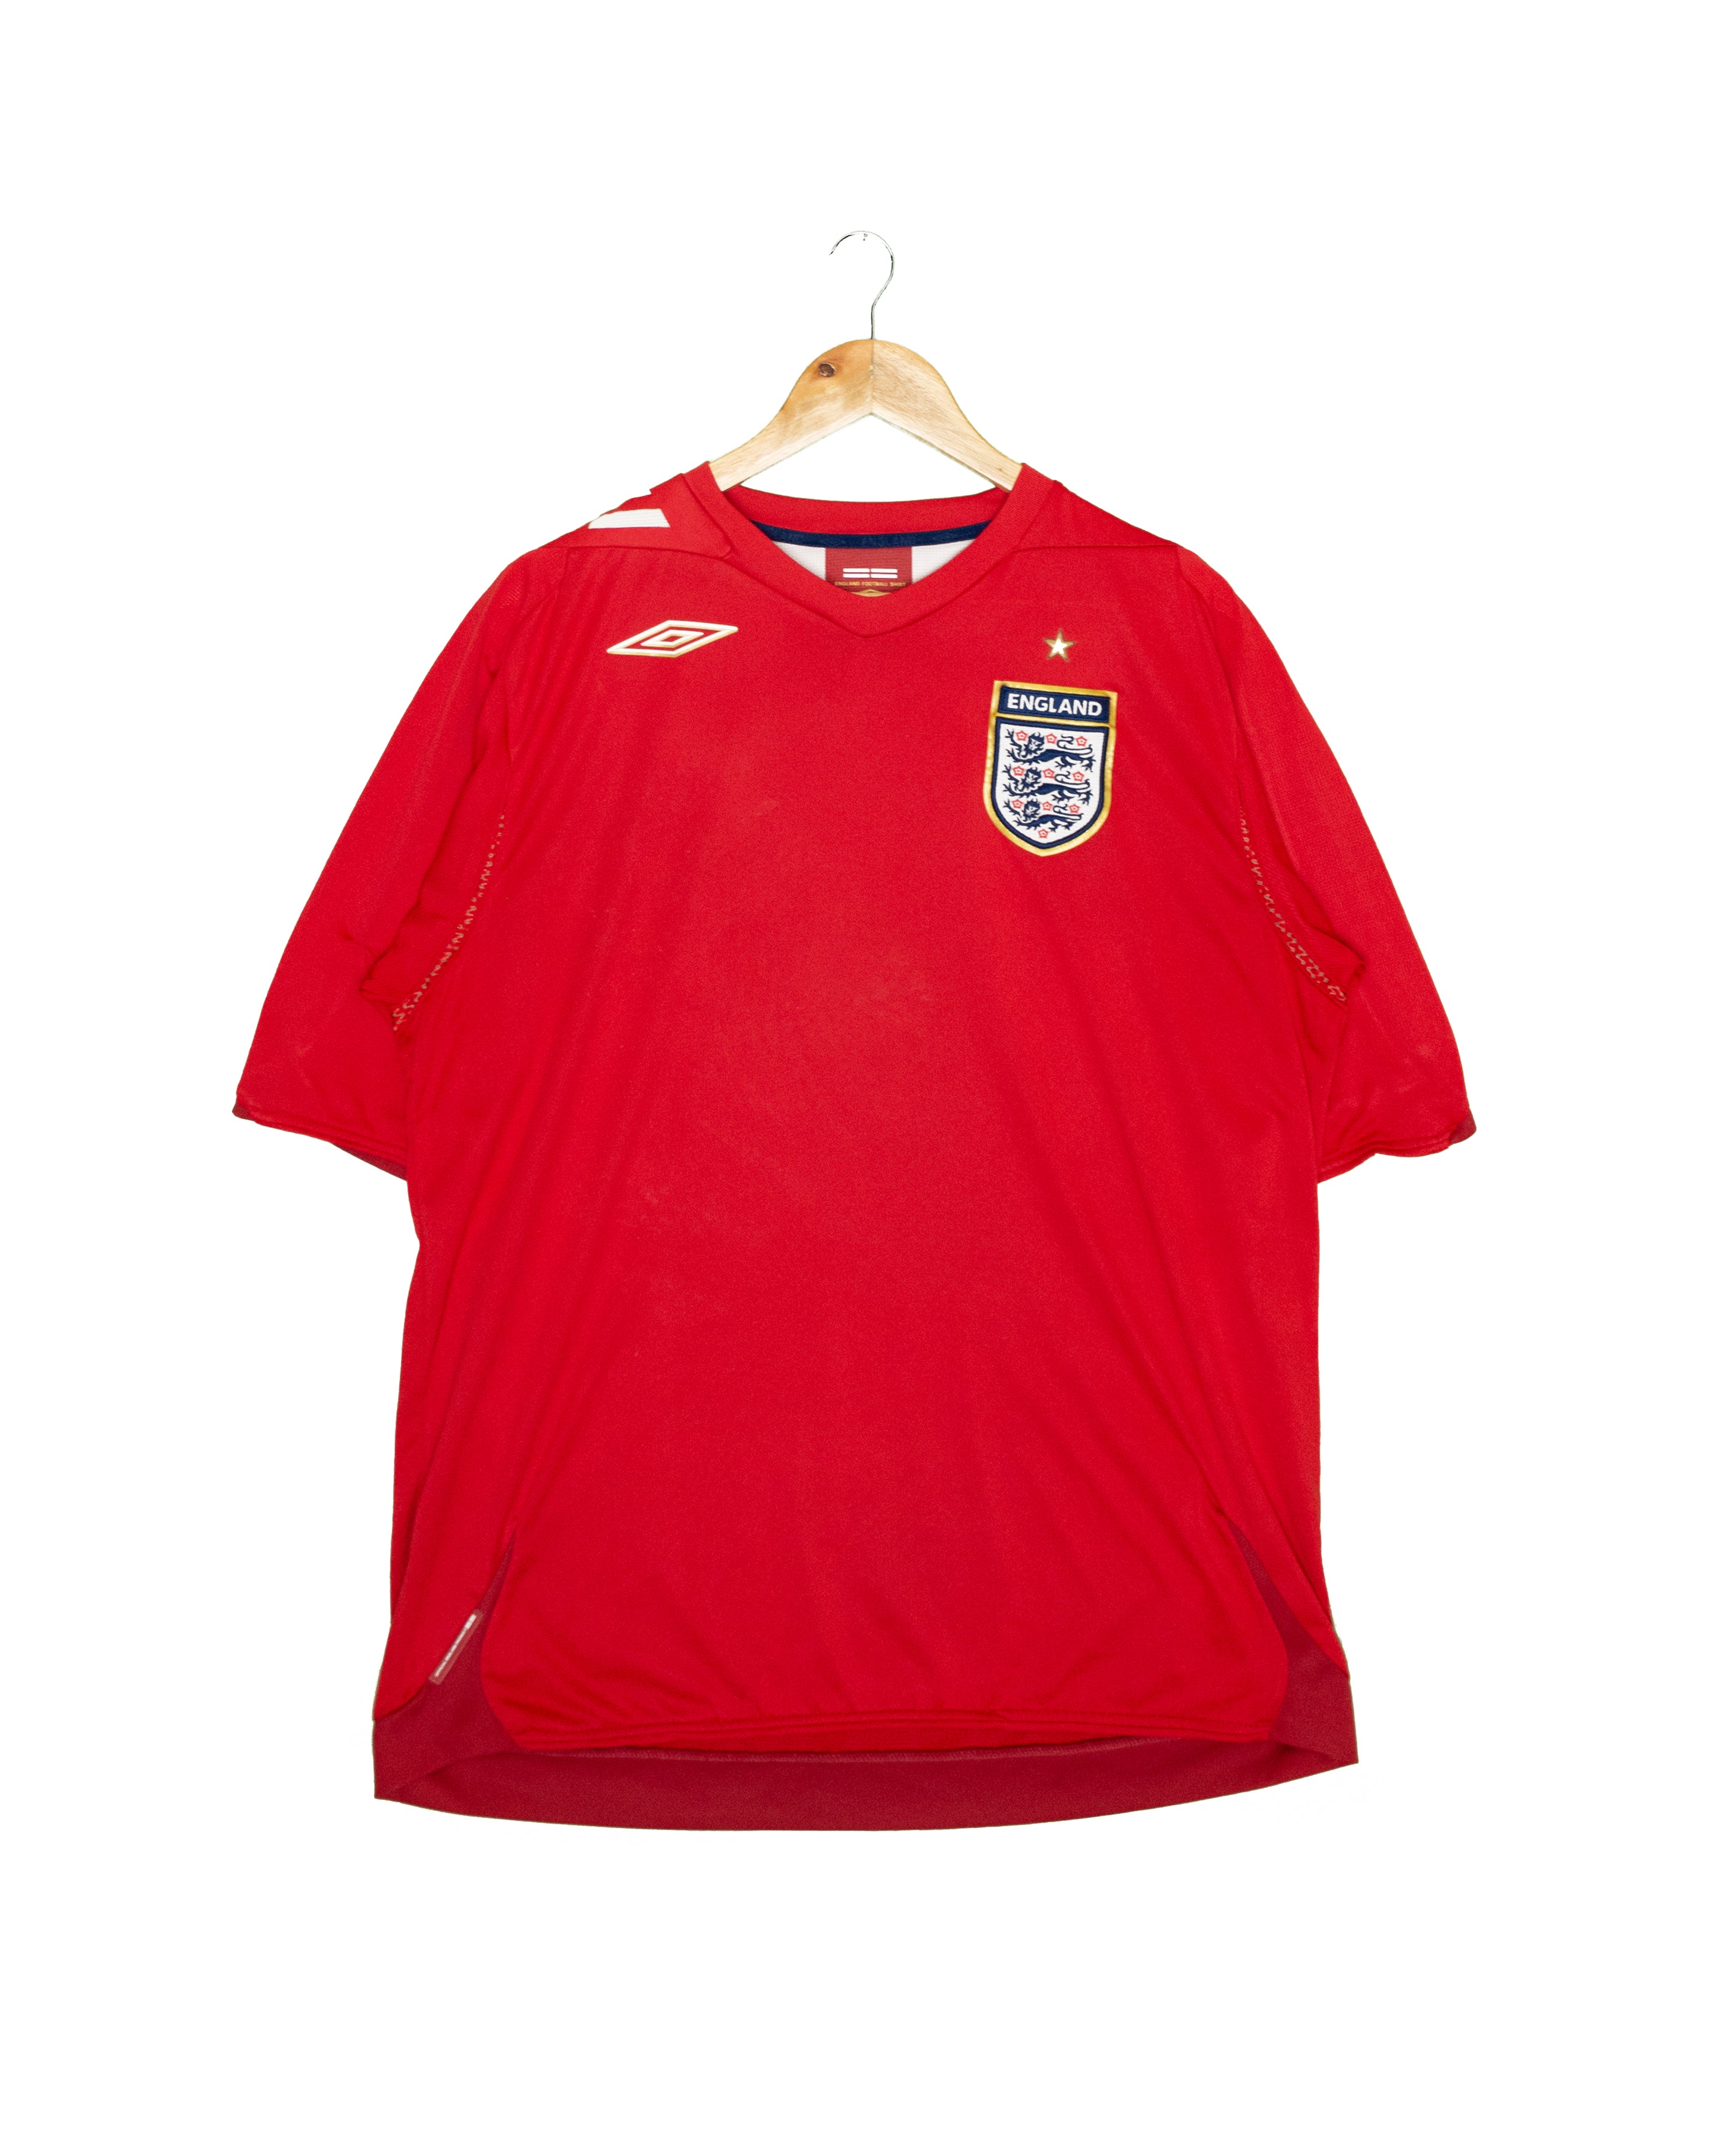 England 2006 Away Shirt - XL - #1903